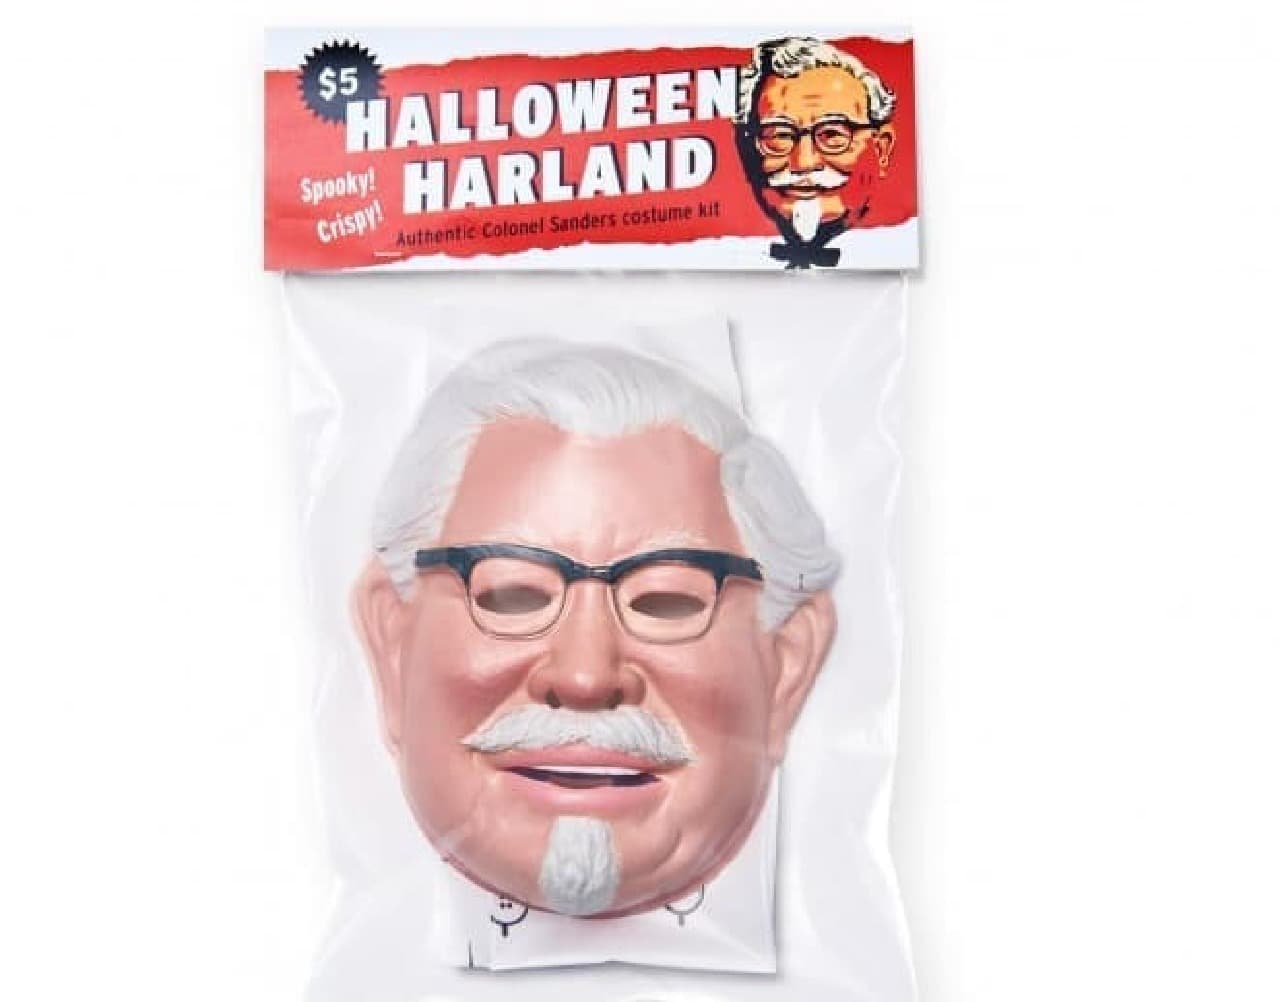 カーネル・サンダースさんの公式ハロウィンコスチューム「Halloween Harland」